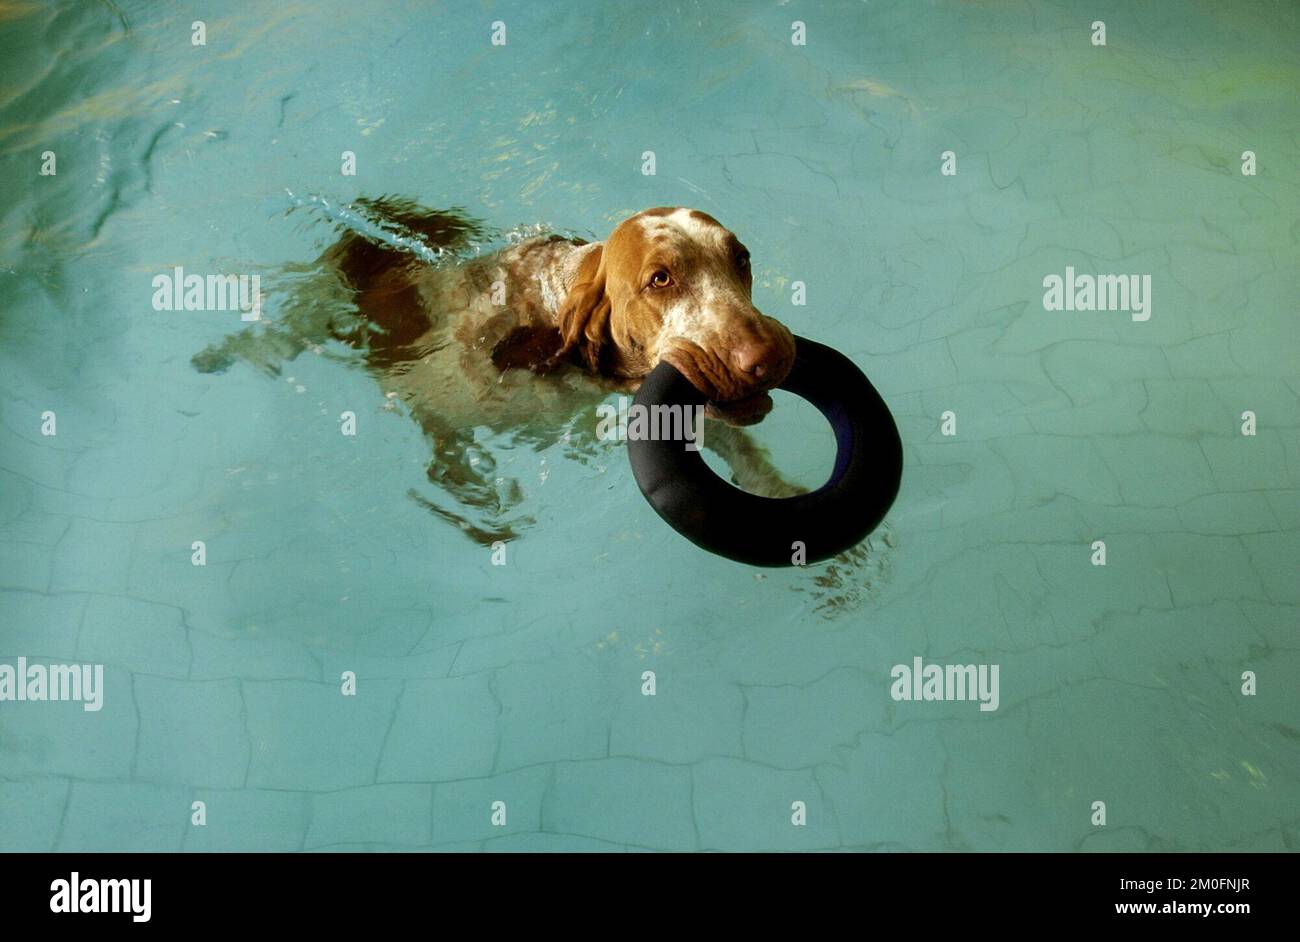 PA PHOTOS / POLFOTO - solo USO: Benvenuto a 'AA Hundecenter', potete chiamarlo 'Hilton hotel for dogs'. Qui i cani hanno pavimenti riscaldati, piscina riscaldata, camerieri, un delizioso menu e attività emozionanti. La foto mostra: Uno dei cani che giocano in piscina. Foto Stock